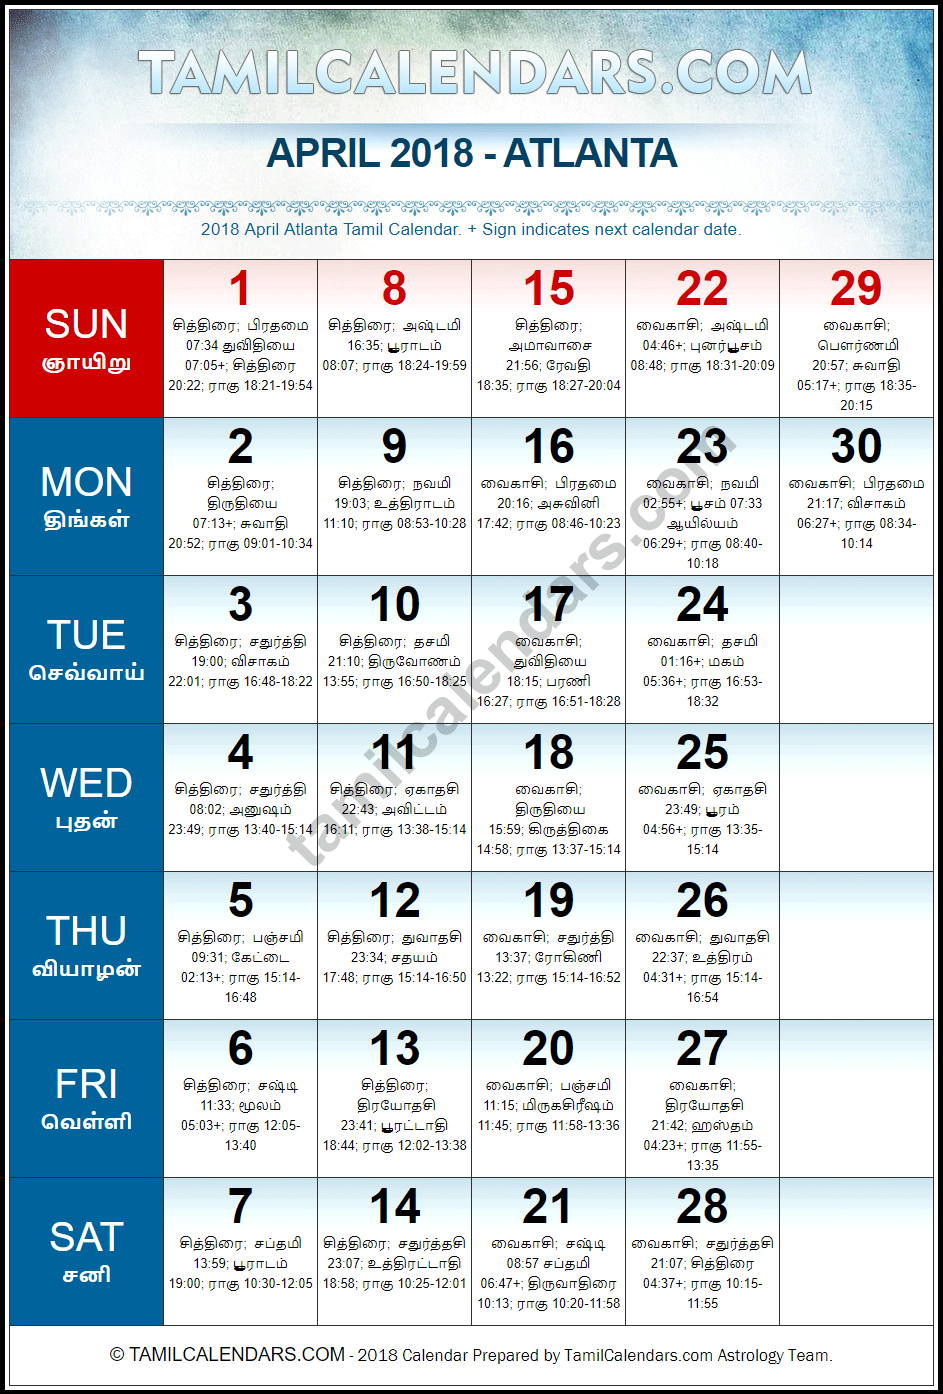 April 2018 Tamil Calendar for Atlanta, USA